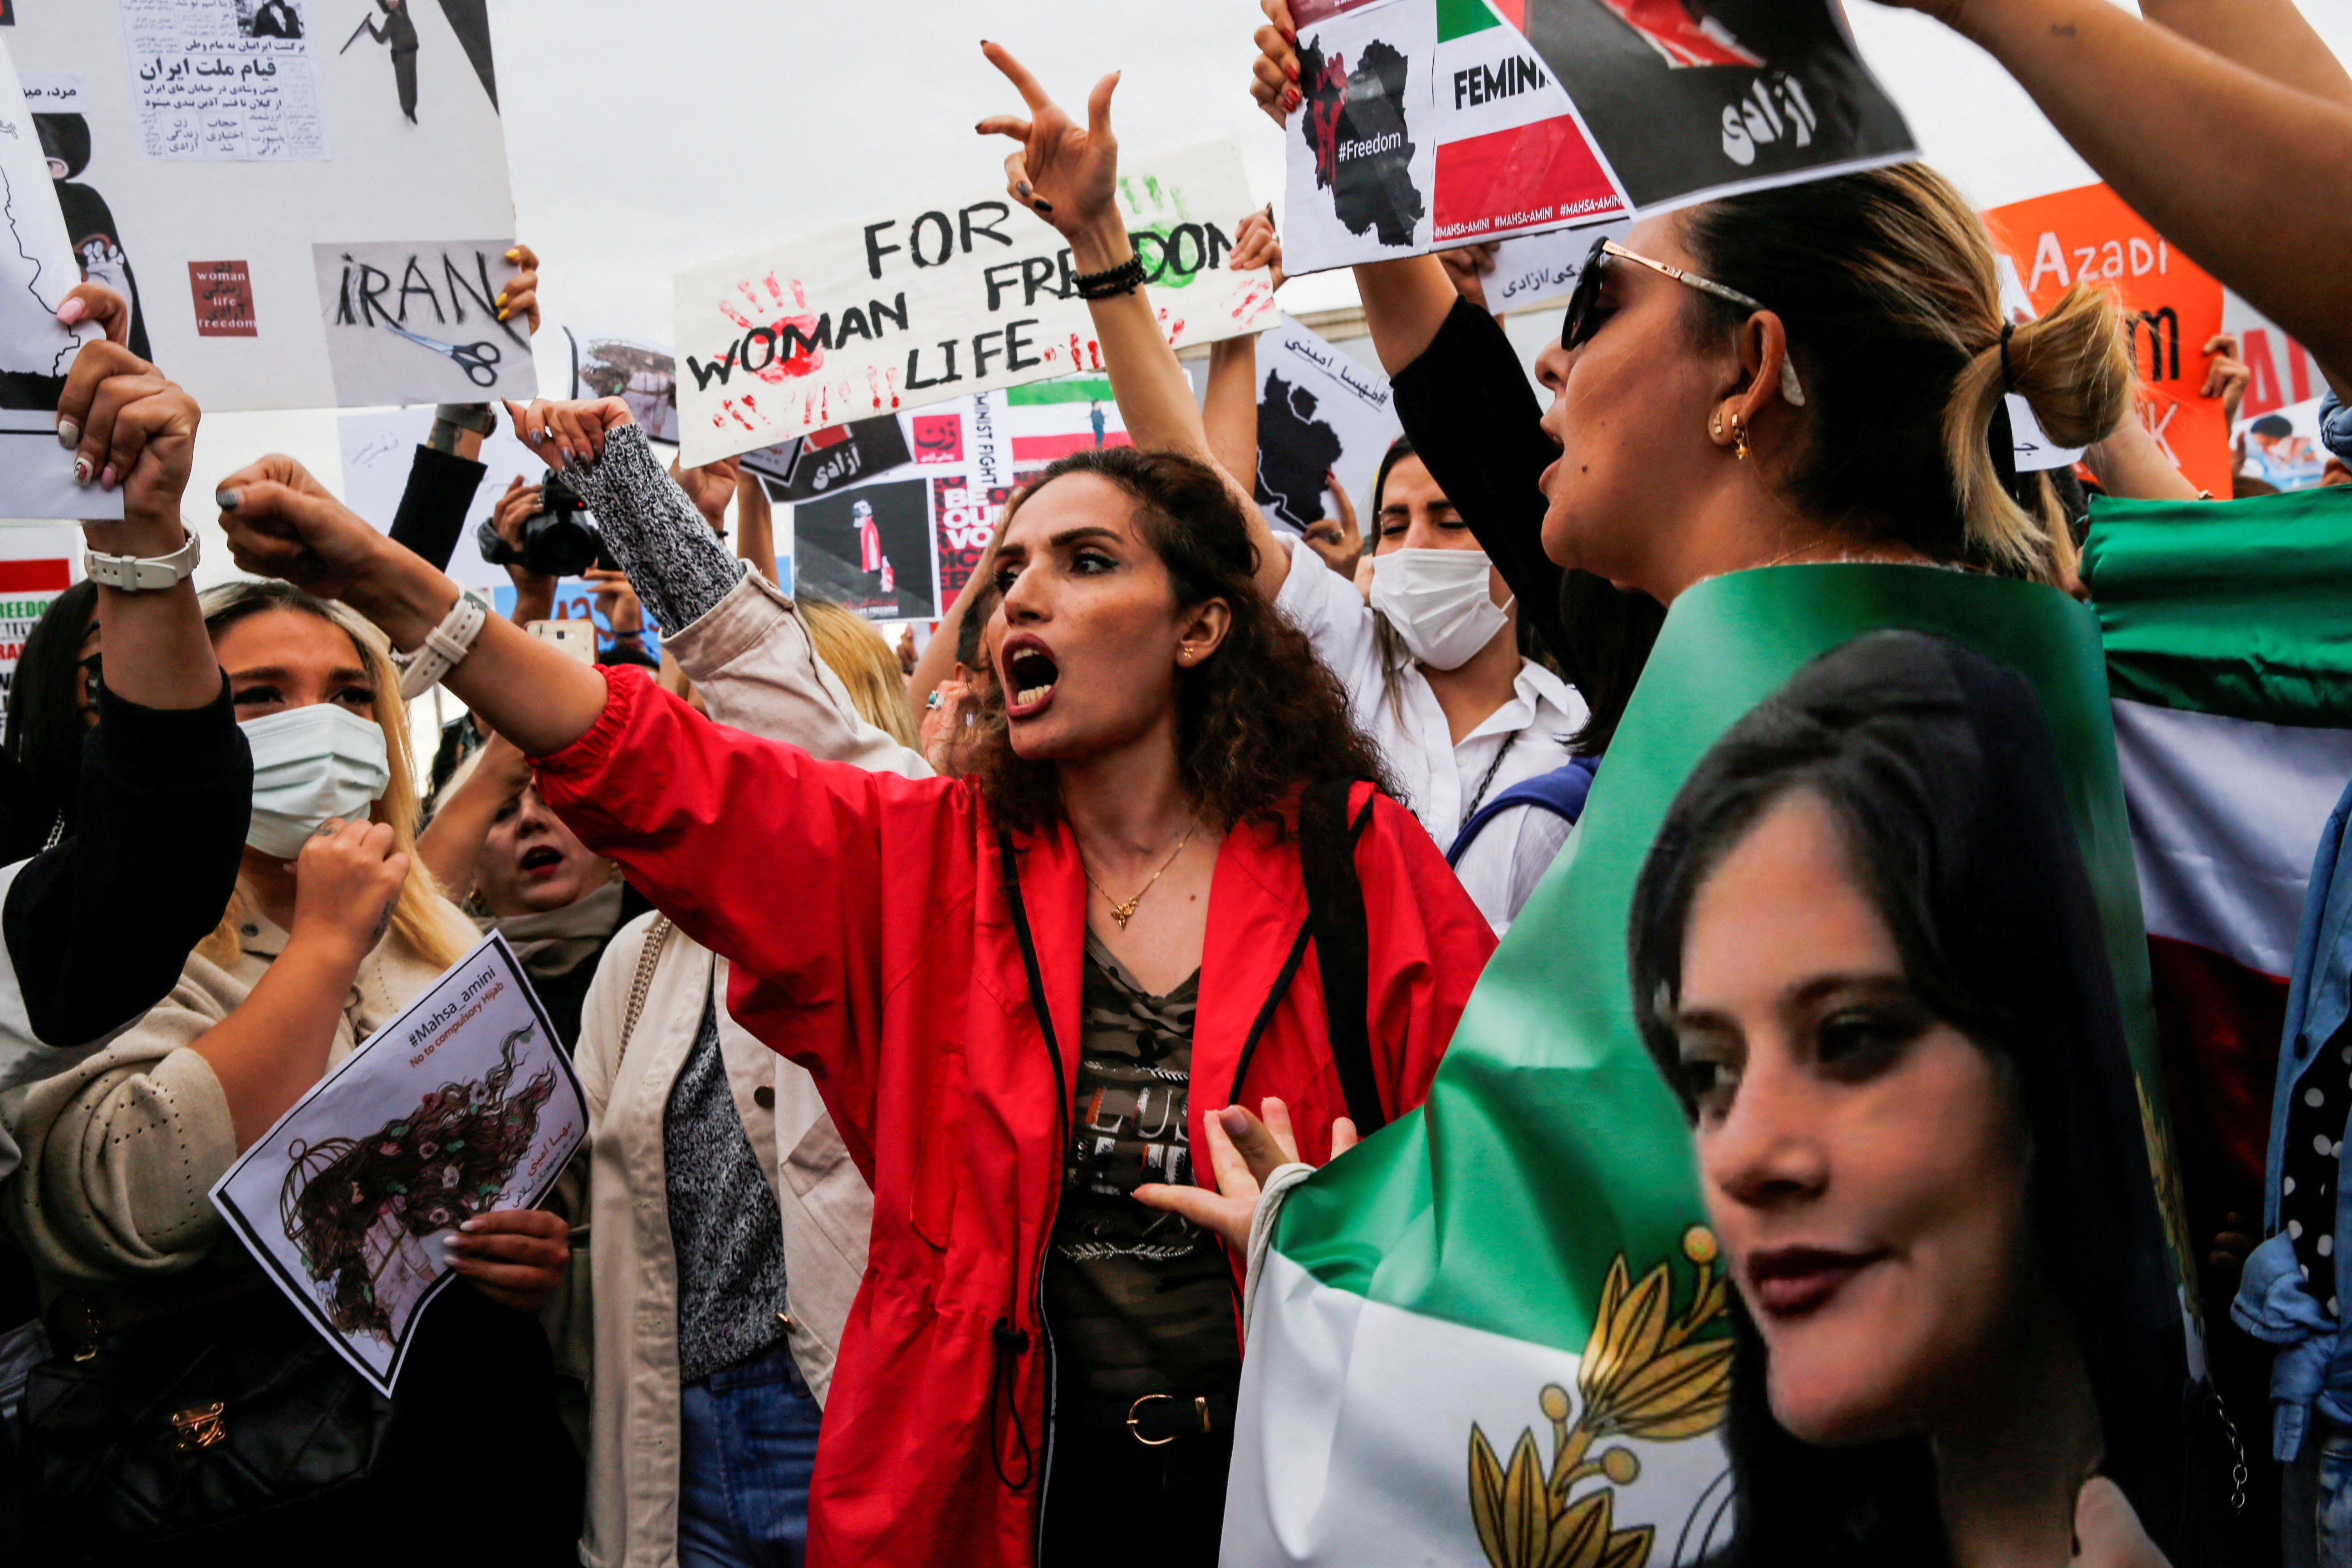 FOTO DE ARCHIVO: Los manifestantes gritan consignas durante una manifestación tras la muerte de Mahsa Amini en Irán. REUTERS/Dilara Senkaya/Foto de archivo
